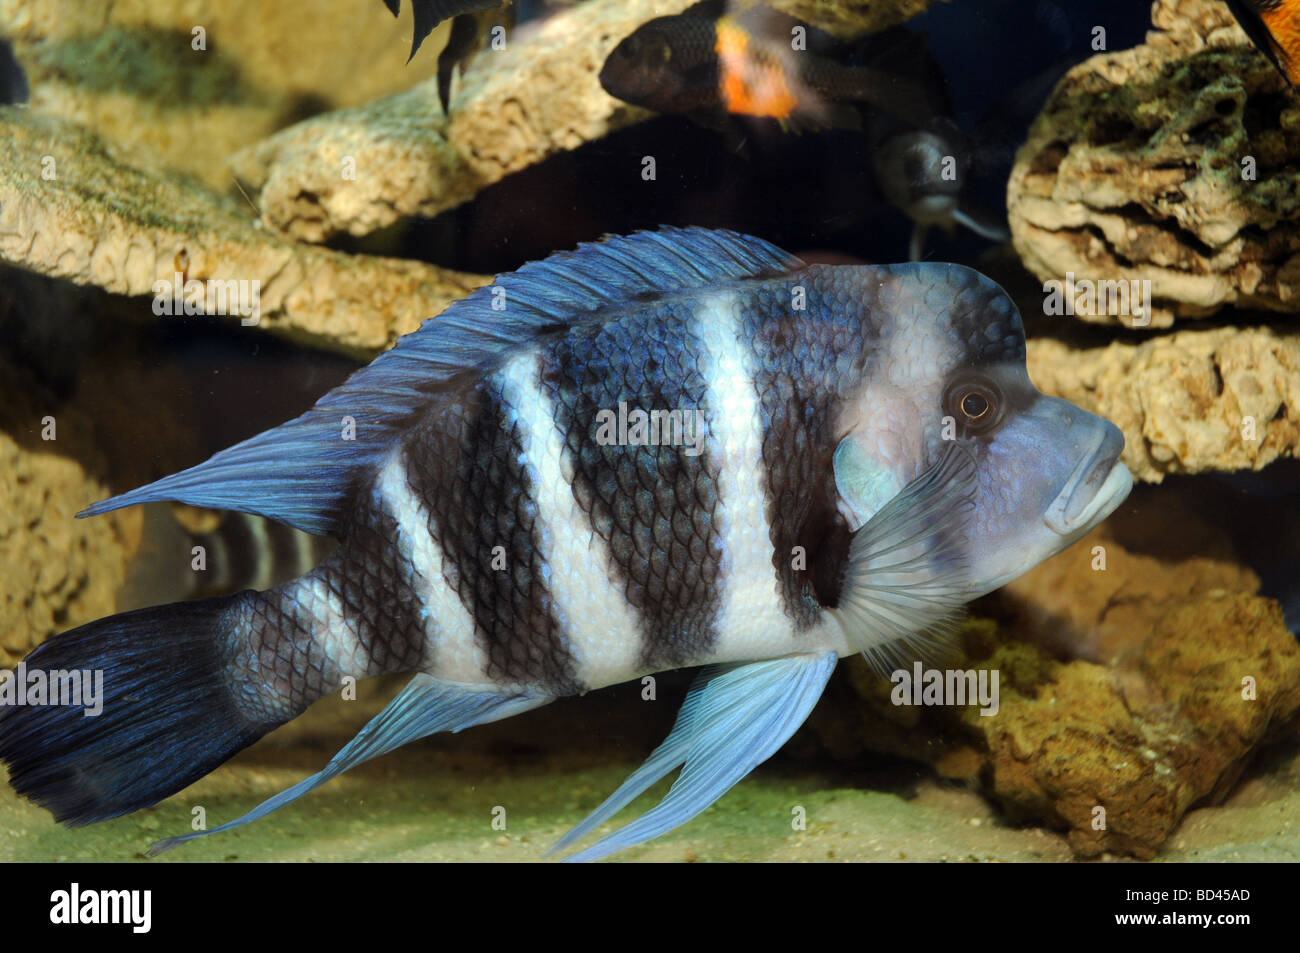 Cyphotilapia frontosa poisson endémique au lac Tanganyika Frontosa communément connu sous le nom de Napoléon ou de cichlidés Cichlid Banque D'Images